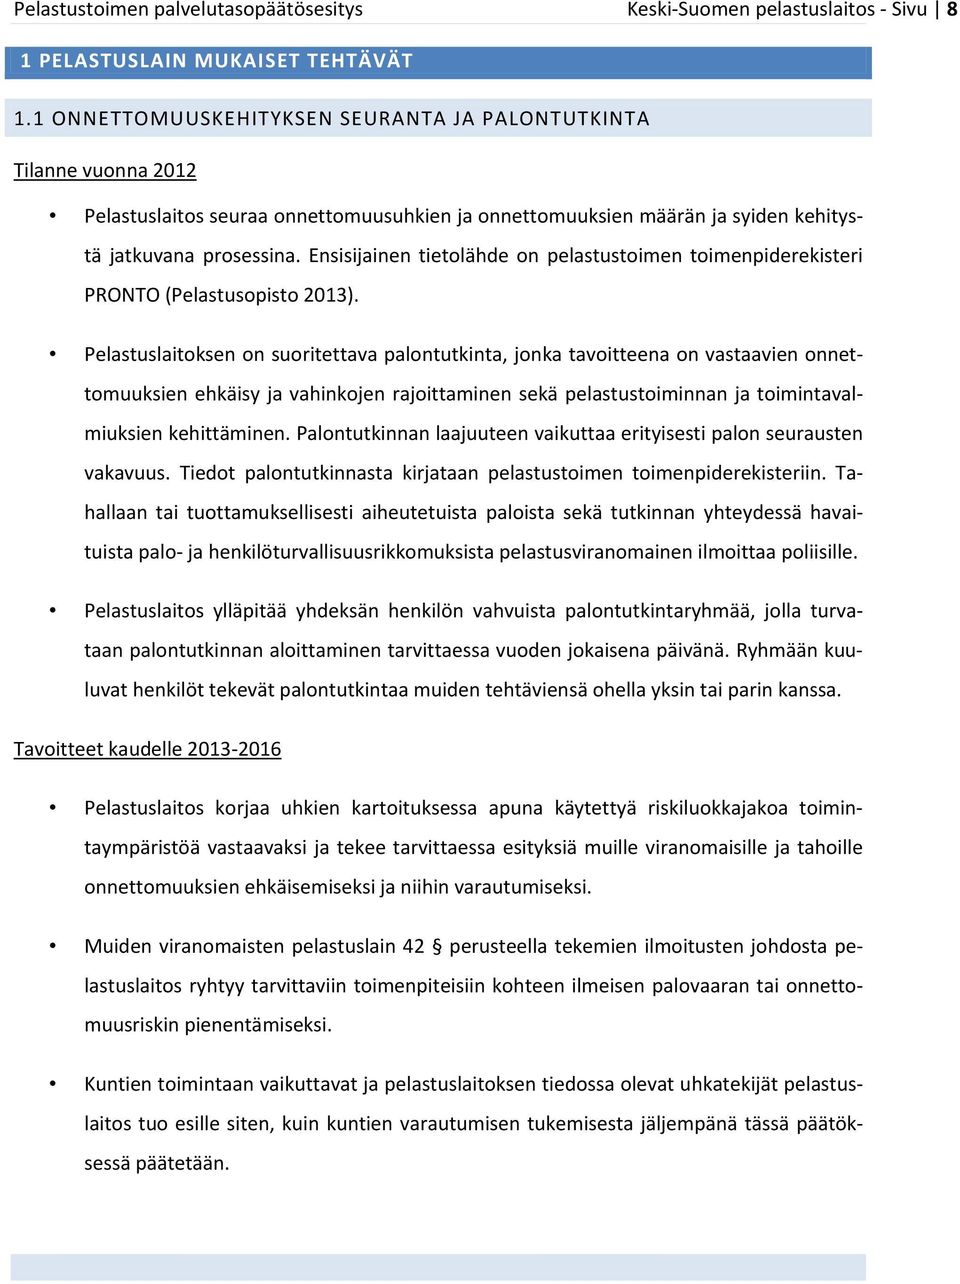 Ensisijainen tietolähde on pelastustoimen toimenpiderekisteri PRONTO (Pelastusopisto 2013).